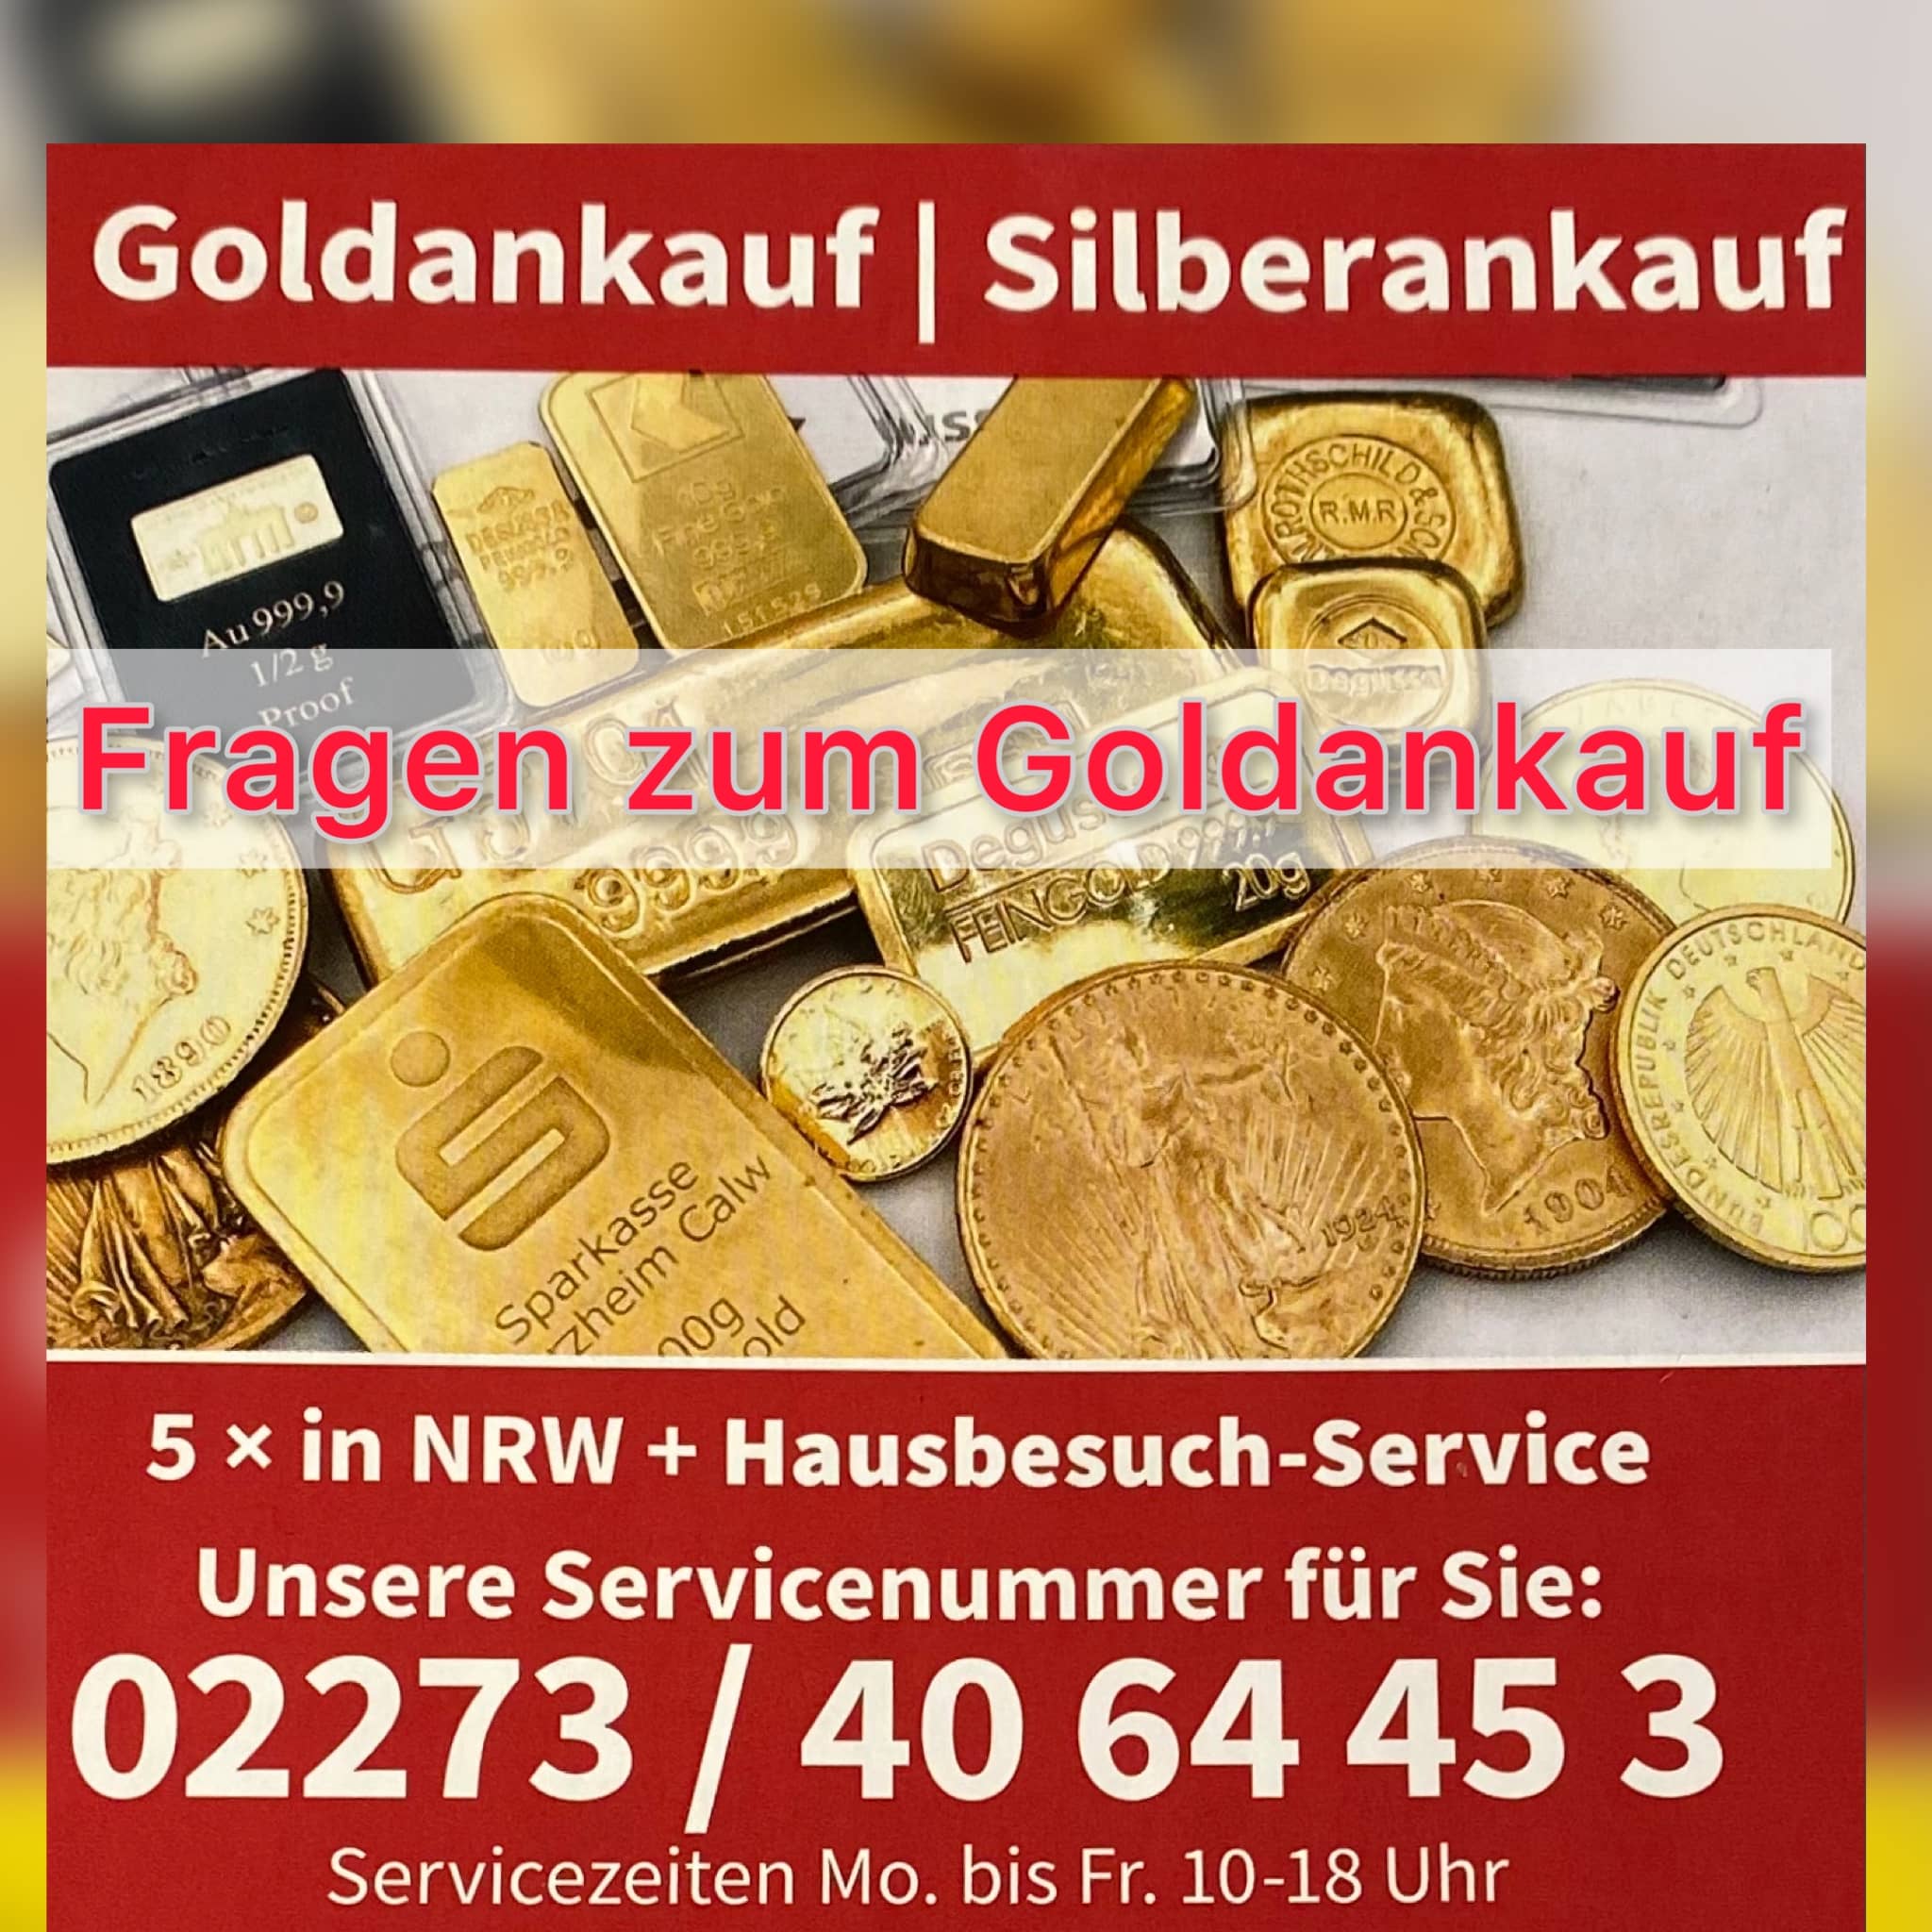 Gold- und Silberankauf deutschlandweit 
Jetzt GRATIS DHL Paketmarke anfordern fuer alten Schmuck, Muenzen, Besteck, Barren!